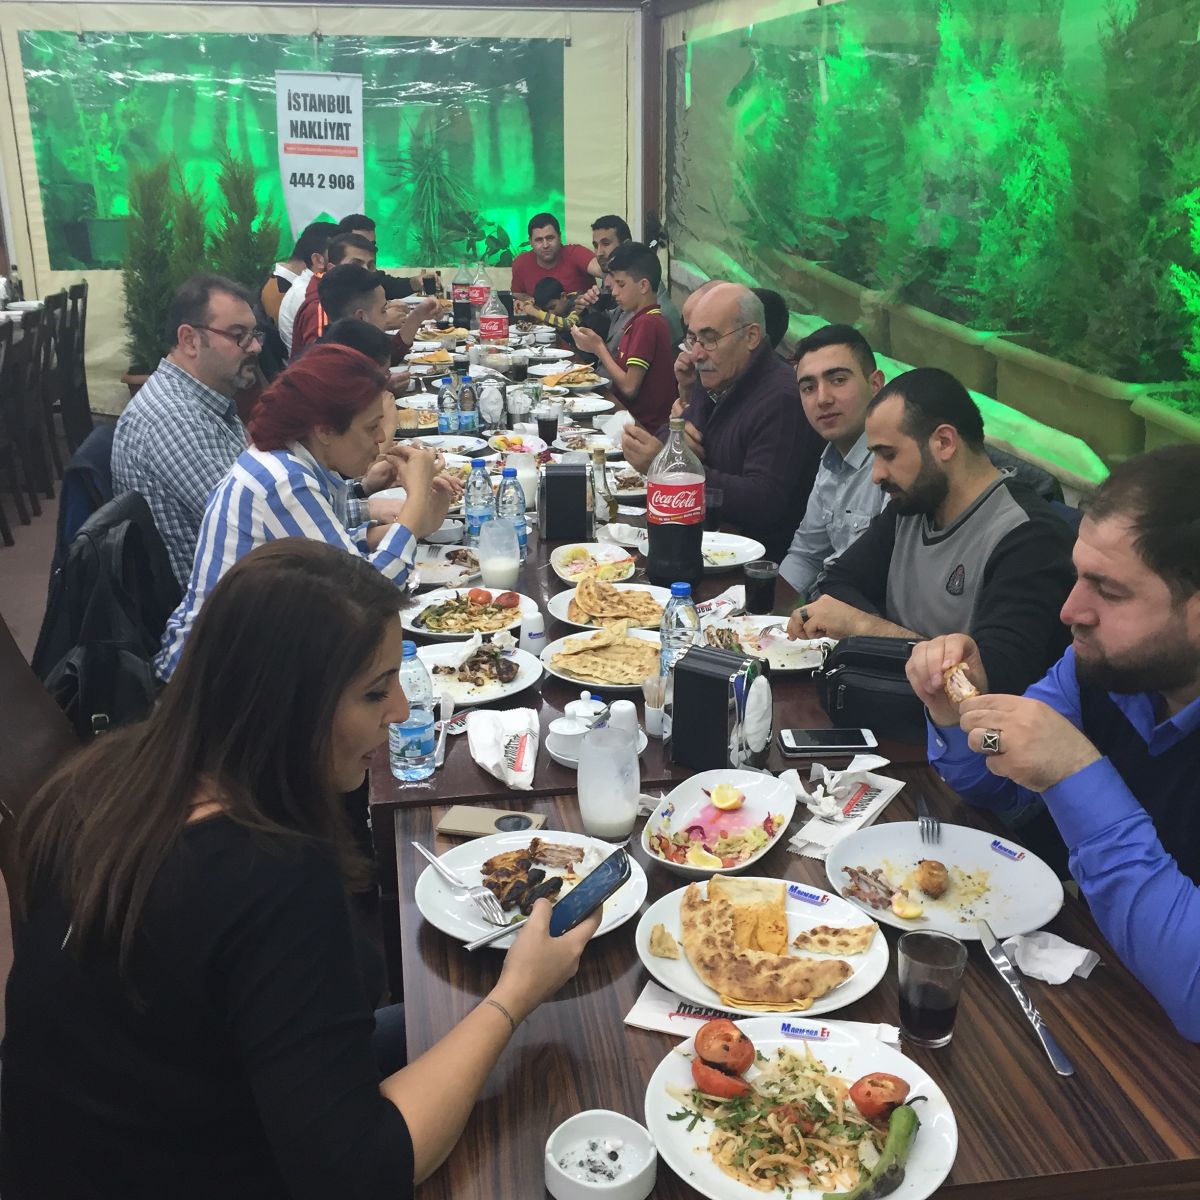 İstanbul Eşya Depolama şirket yemeği